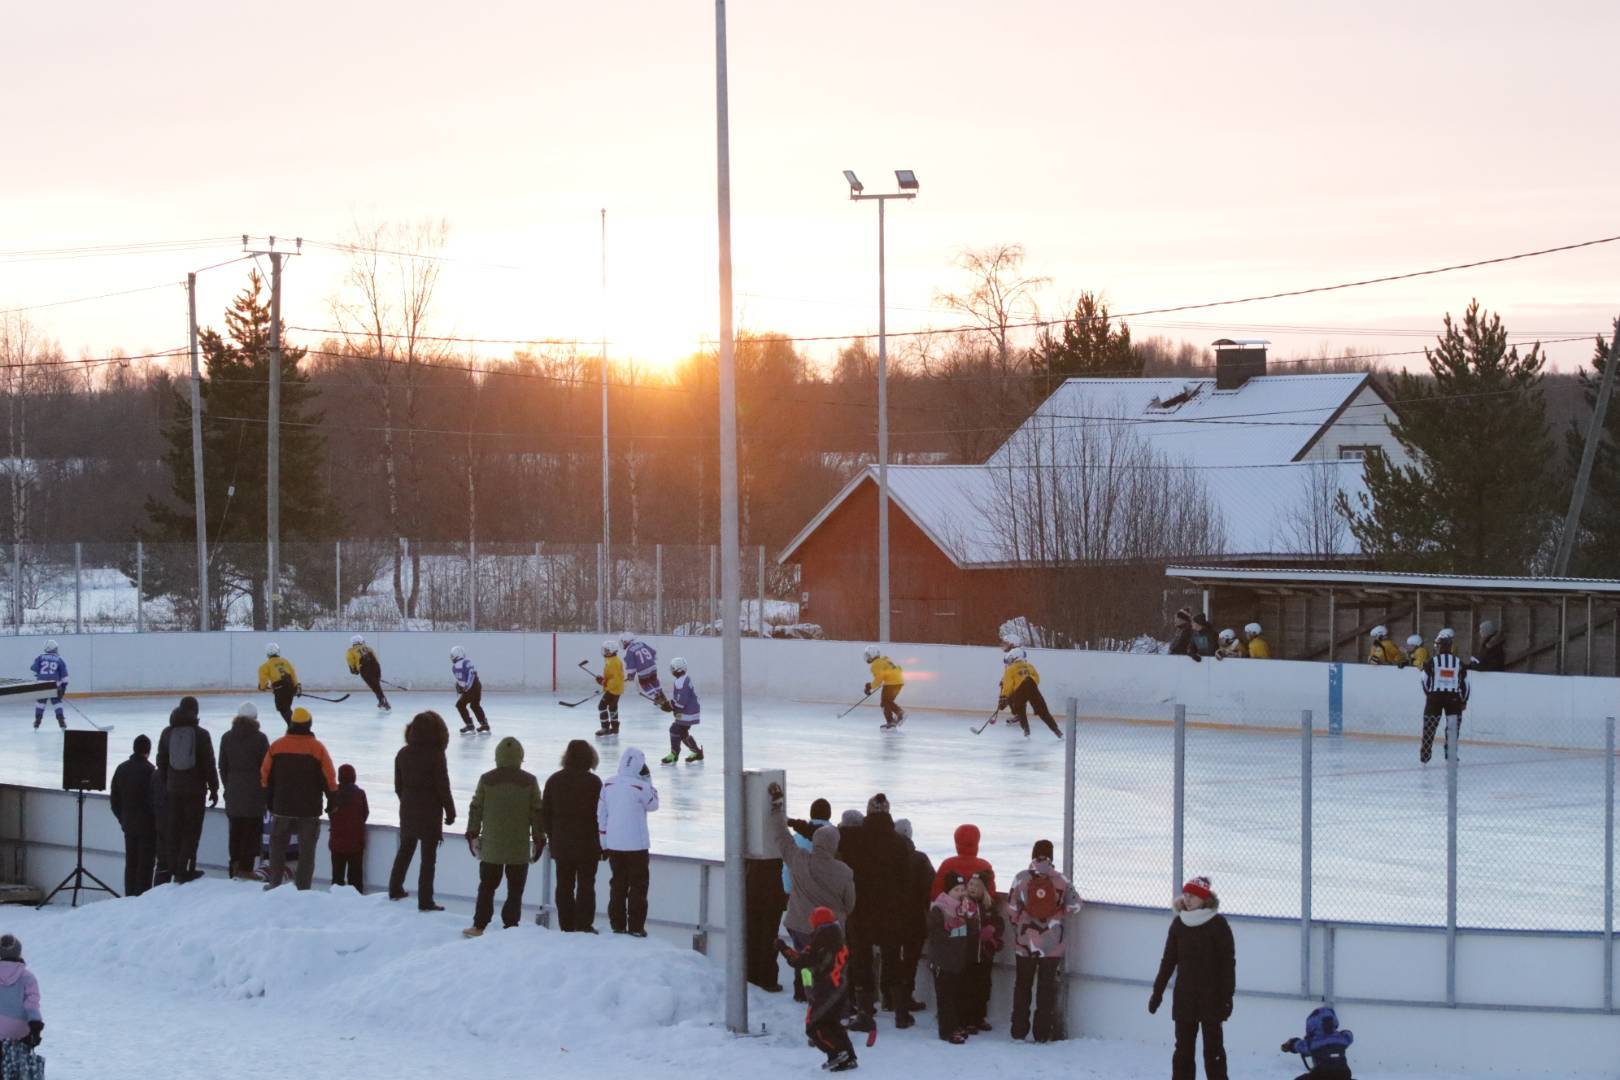 RoKi Keltainen nappasi kaksi voittoa Tornion Winter Classic ulkojääpeleissä